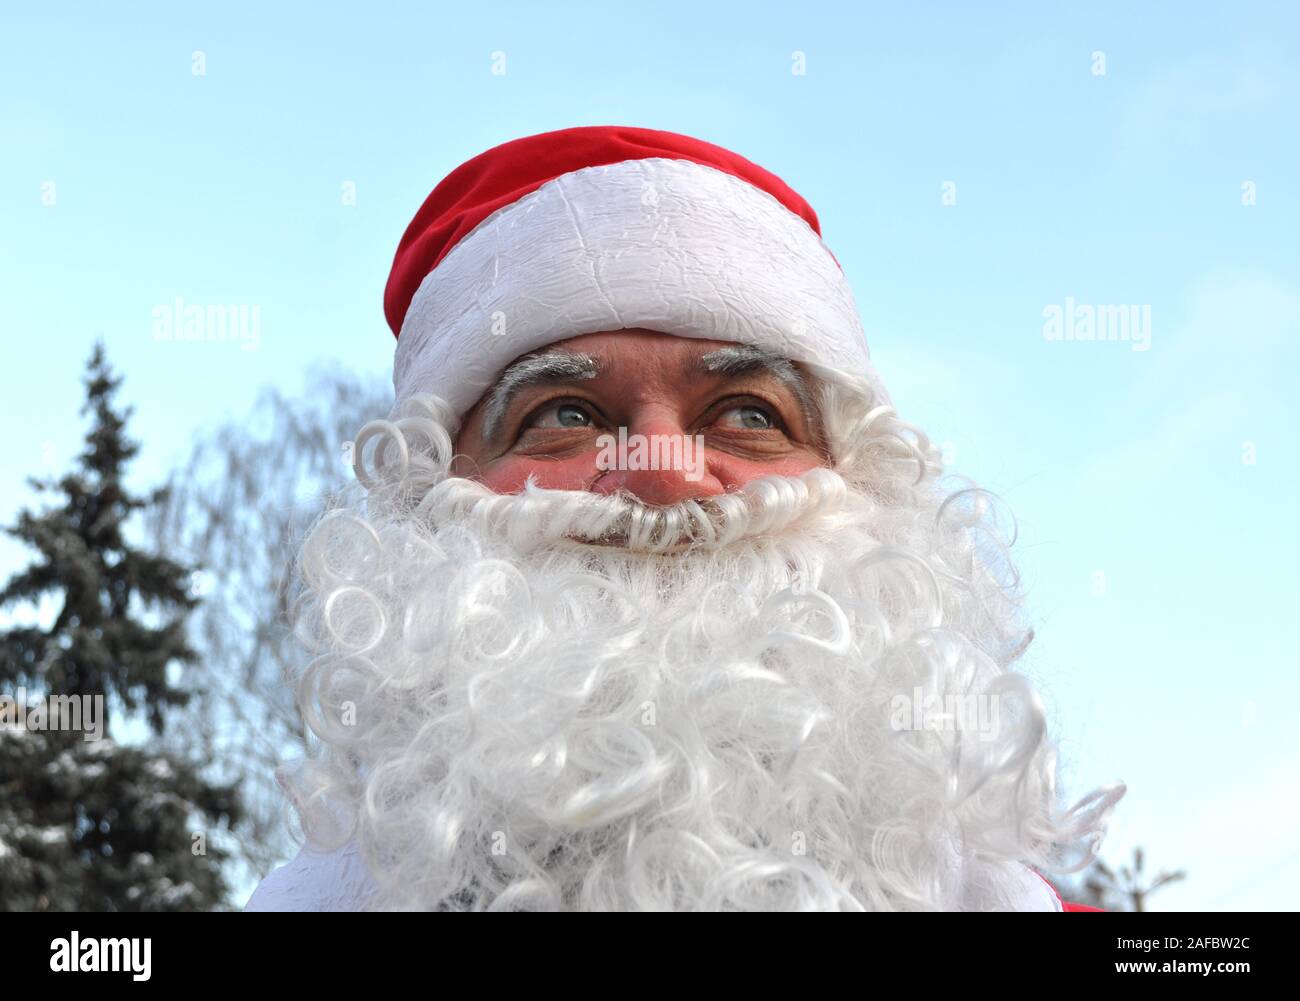 Cherkasy, Ucraina,Dicembre,24, 2011: Santa Claus ha preso parte nel nuovo anno mostra nella piazza della città vicino all'albero di Natale Foto Stock